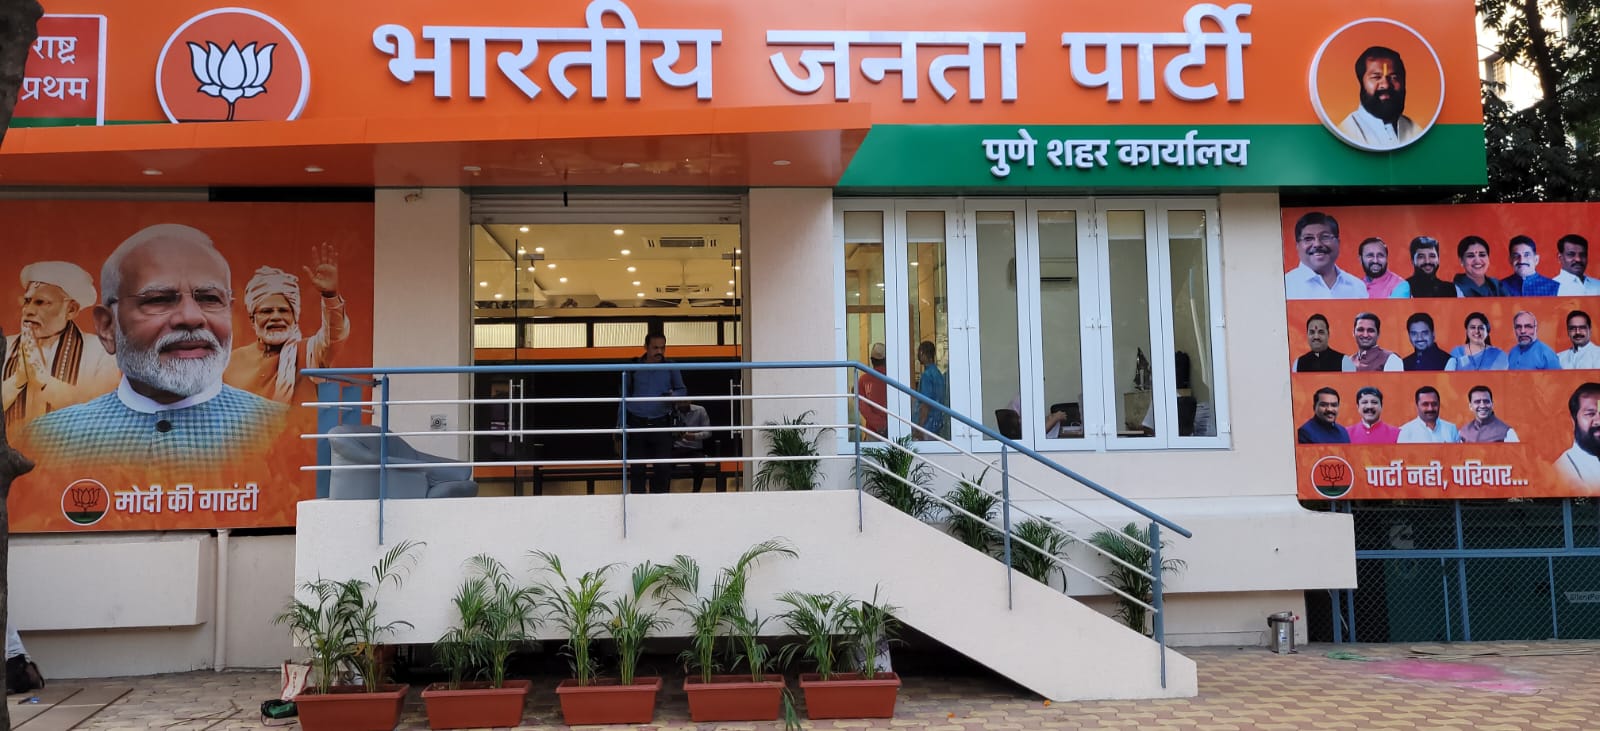 BJP Pune New Office on DP Road |  पुणे शहर भाजपला मिळाले नवीन शहर कार्यालय | ७ जानेवारीला देवेंद्र फडणवीस देणार भेट 